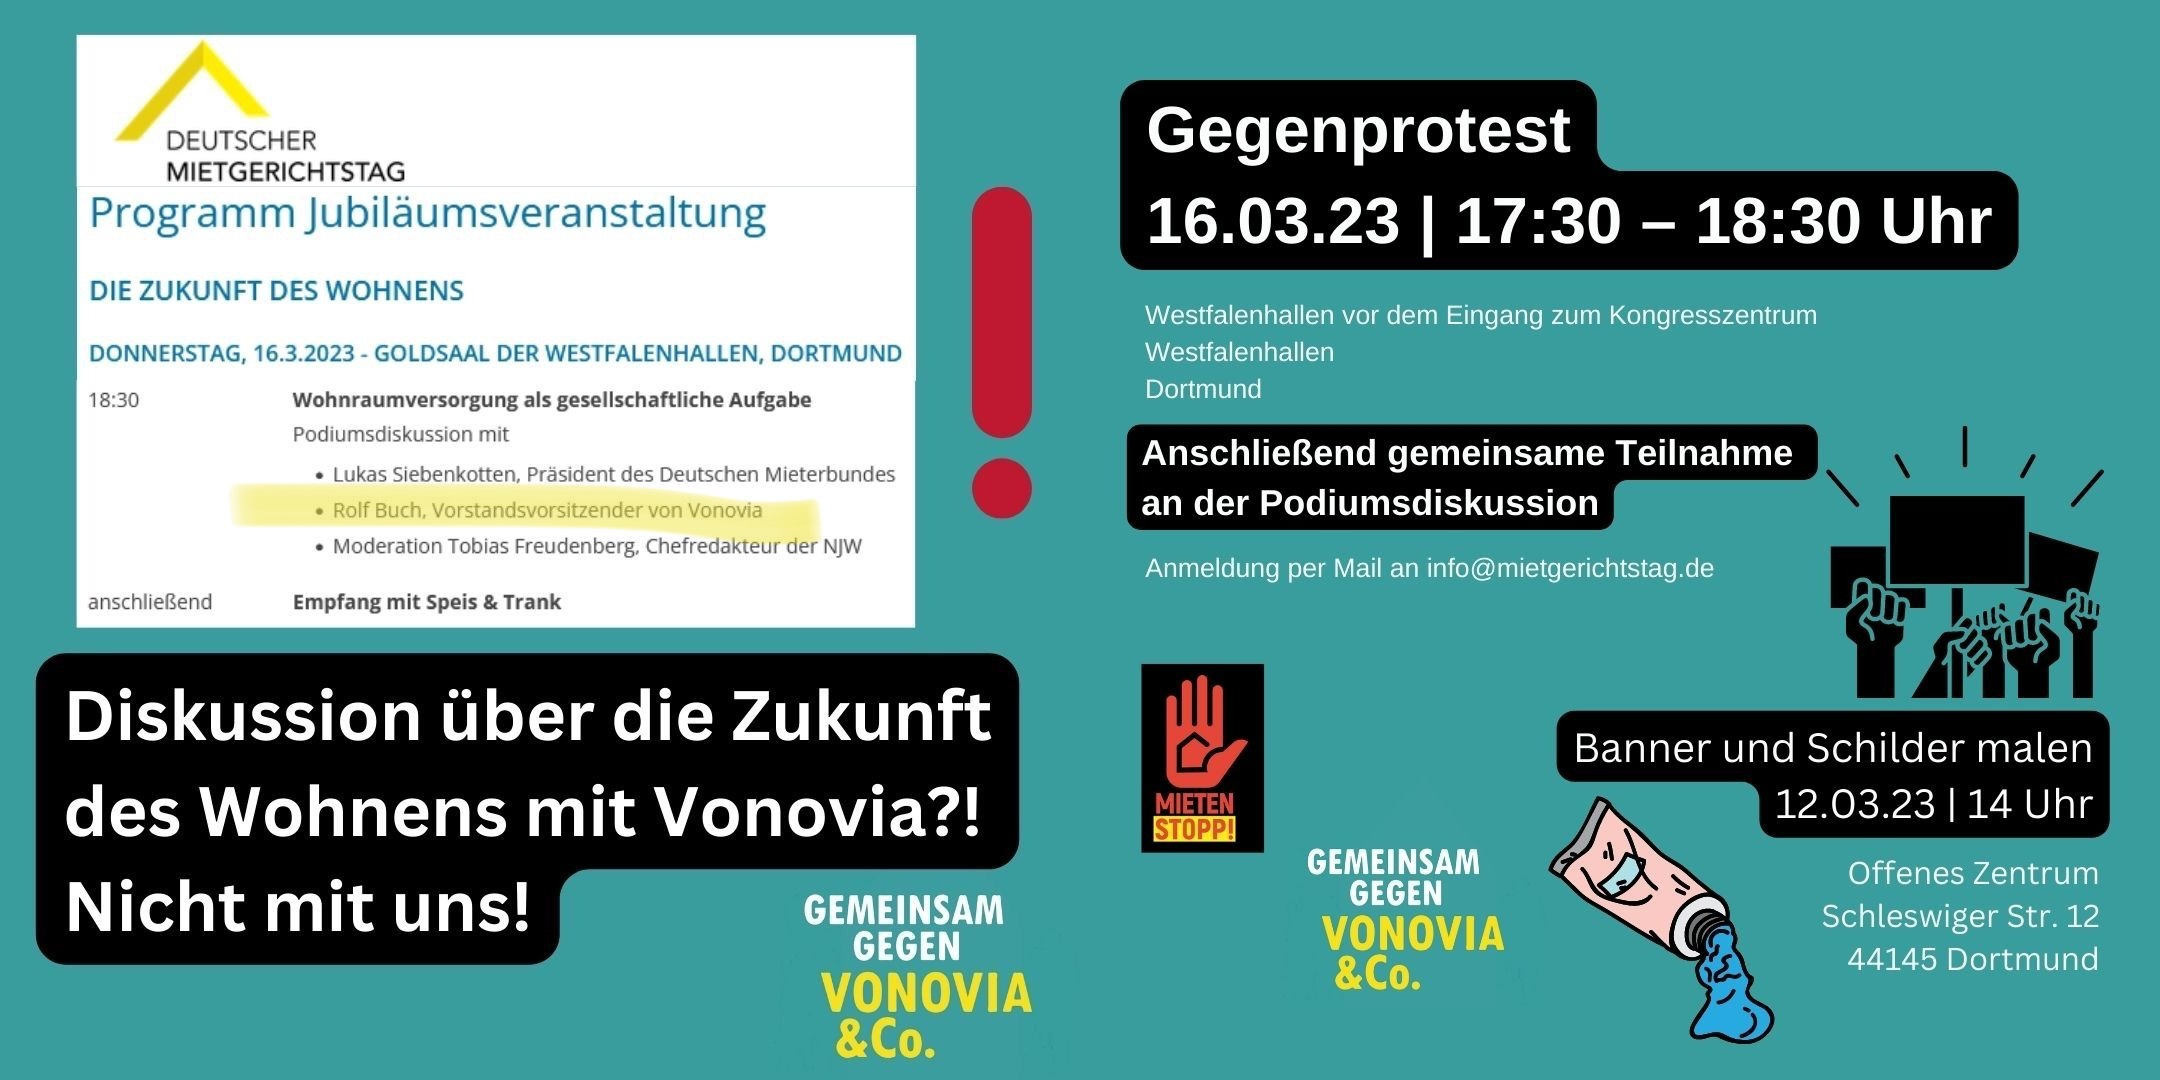 Protest gegen Vonovia zu Mietgerichtstagen in Dortmund